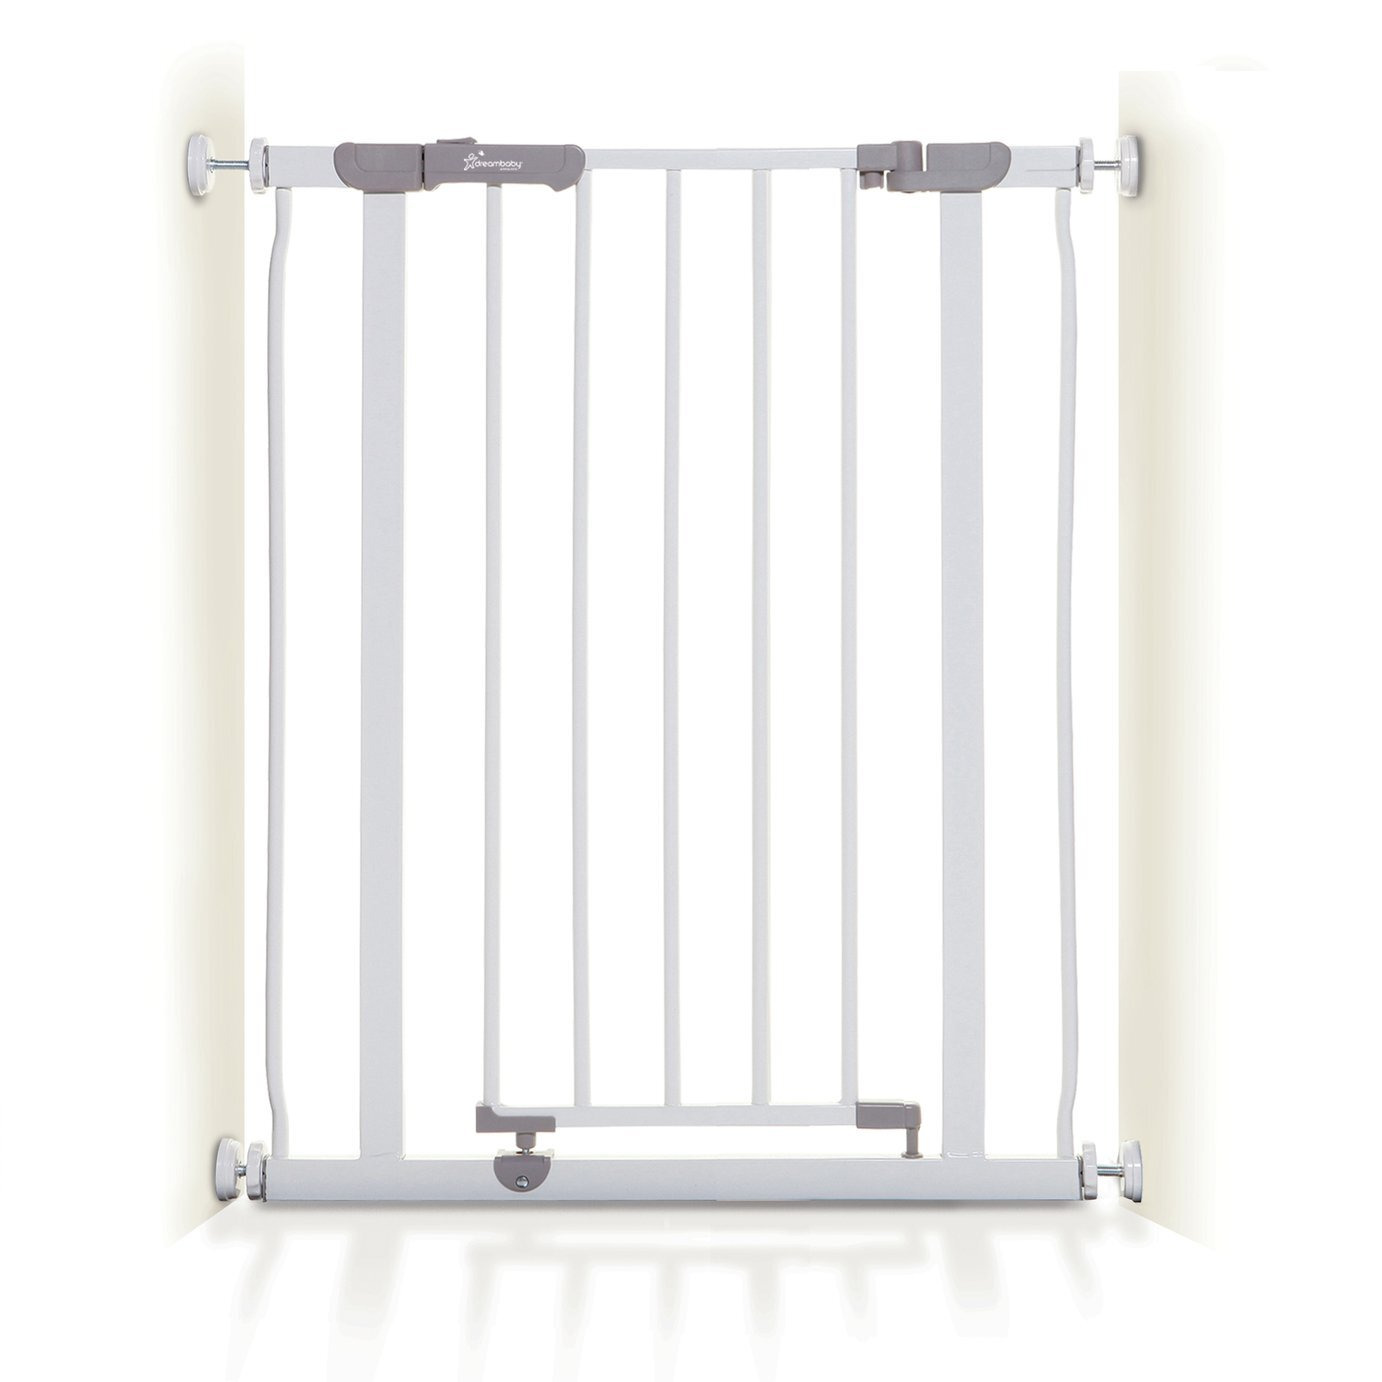 Dreambaby AVA Slimline Safety Gate Fits 61-68cm - White - image 1